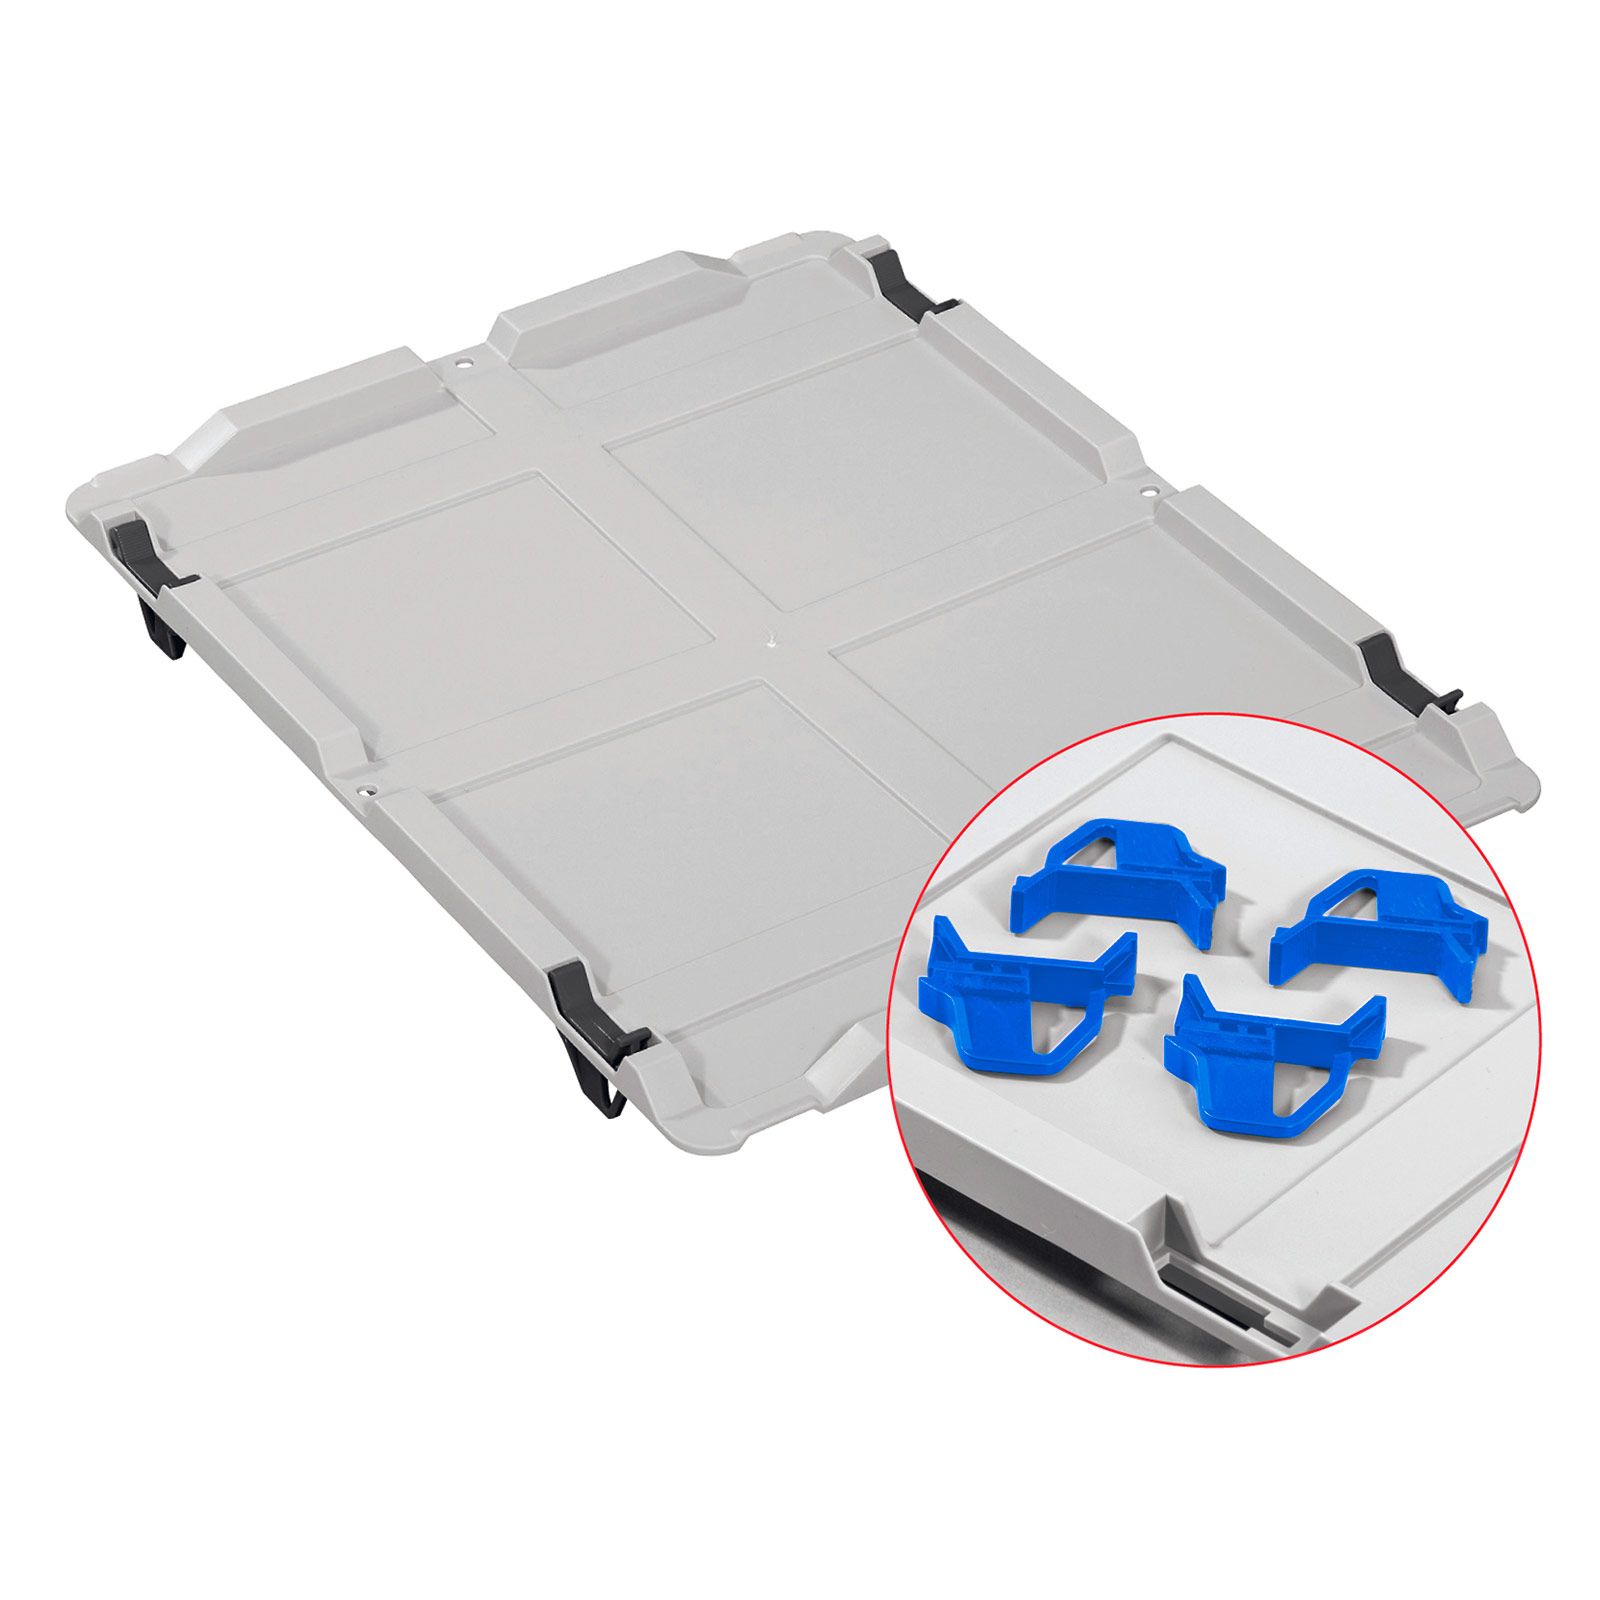 Auflagedeckel Set Eurobox NextGen mit 4 blauen Schiebeschnappverschlüssen | BxT 30x40cm | Eurobehälter, Transportbox, Transportbehälter, Stapelbehälter